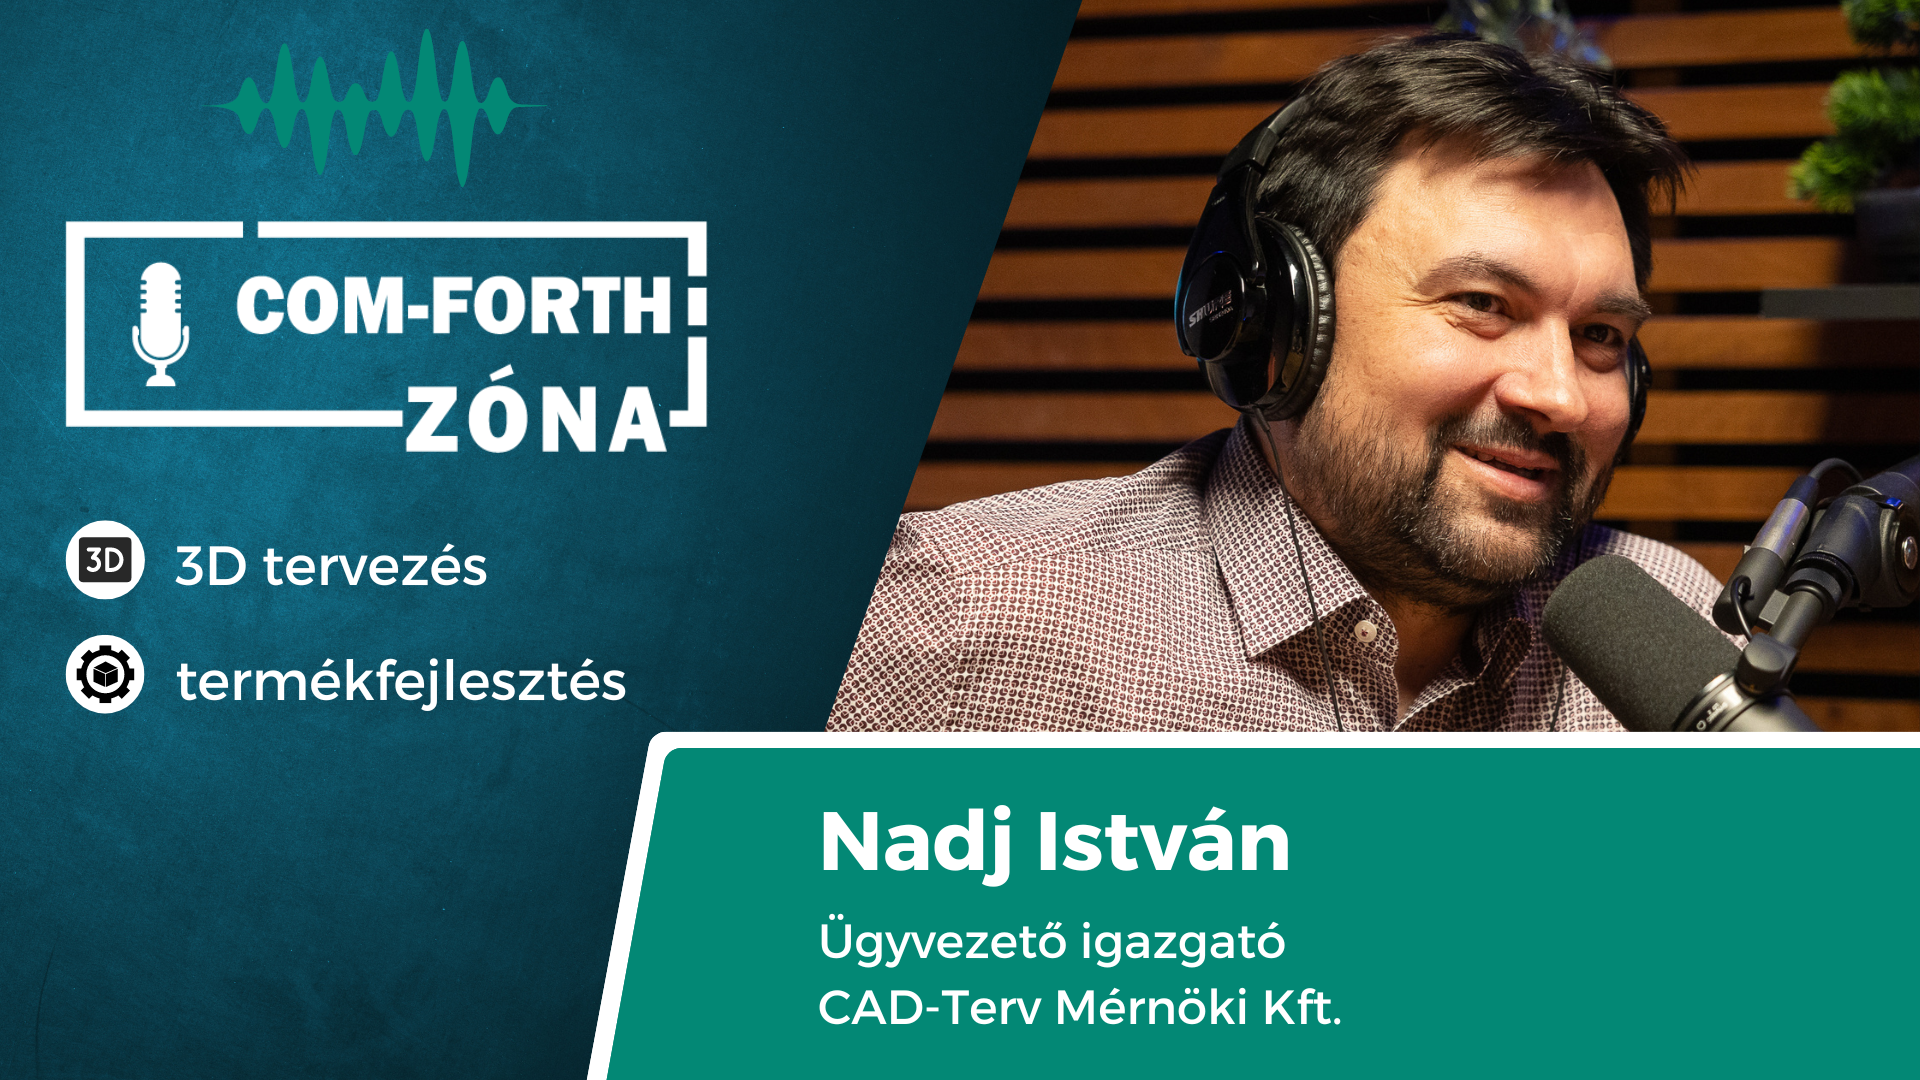 CF Zóna podcast Nadj István landing